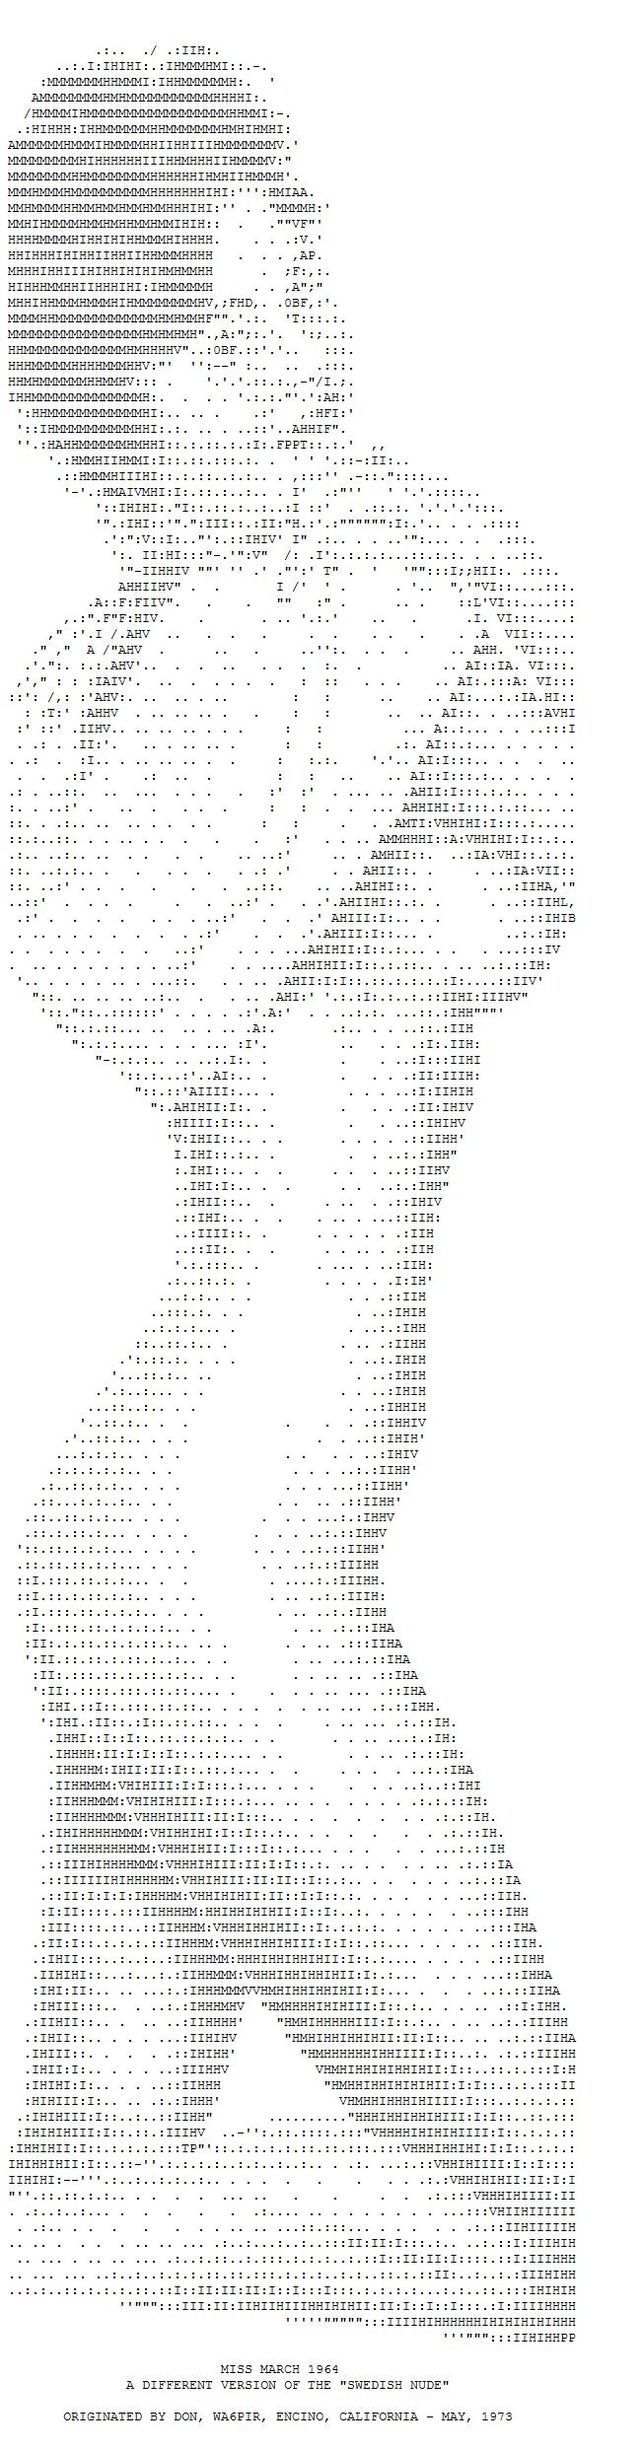 ASCII erotic images - 03